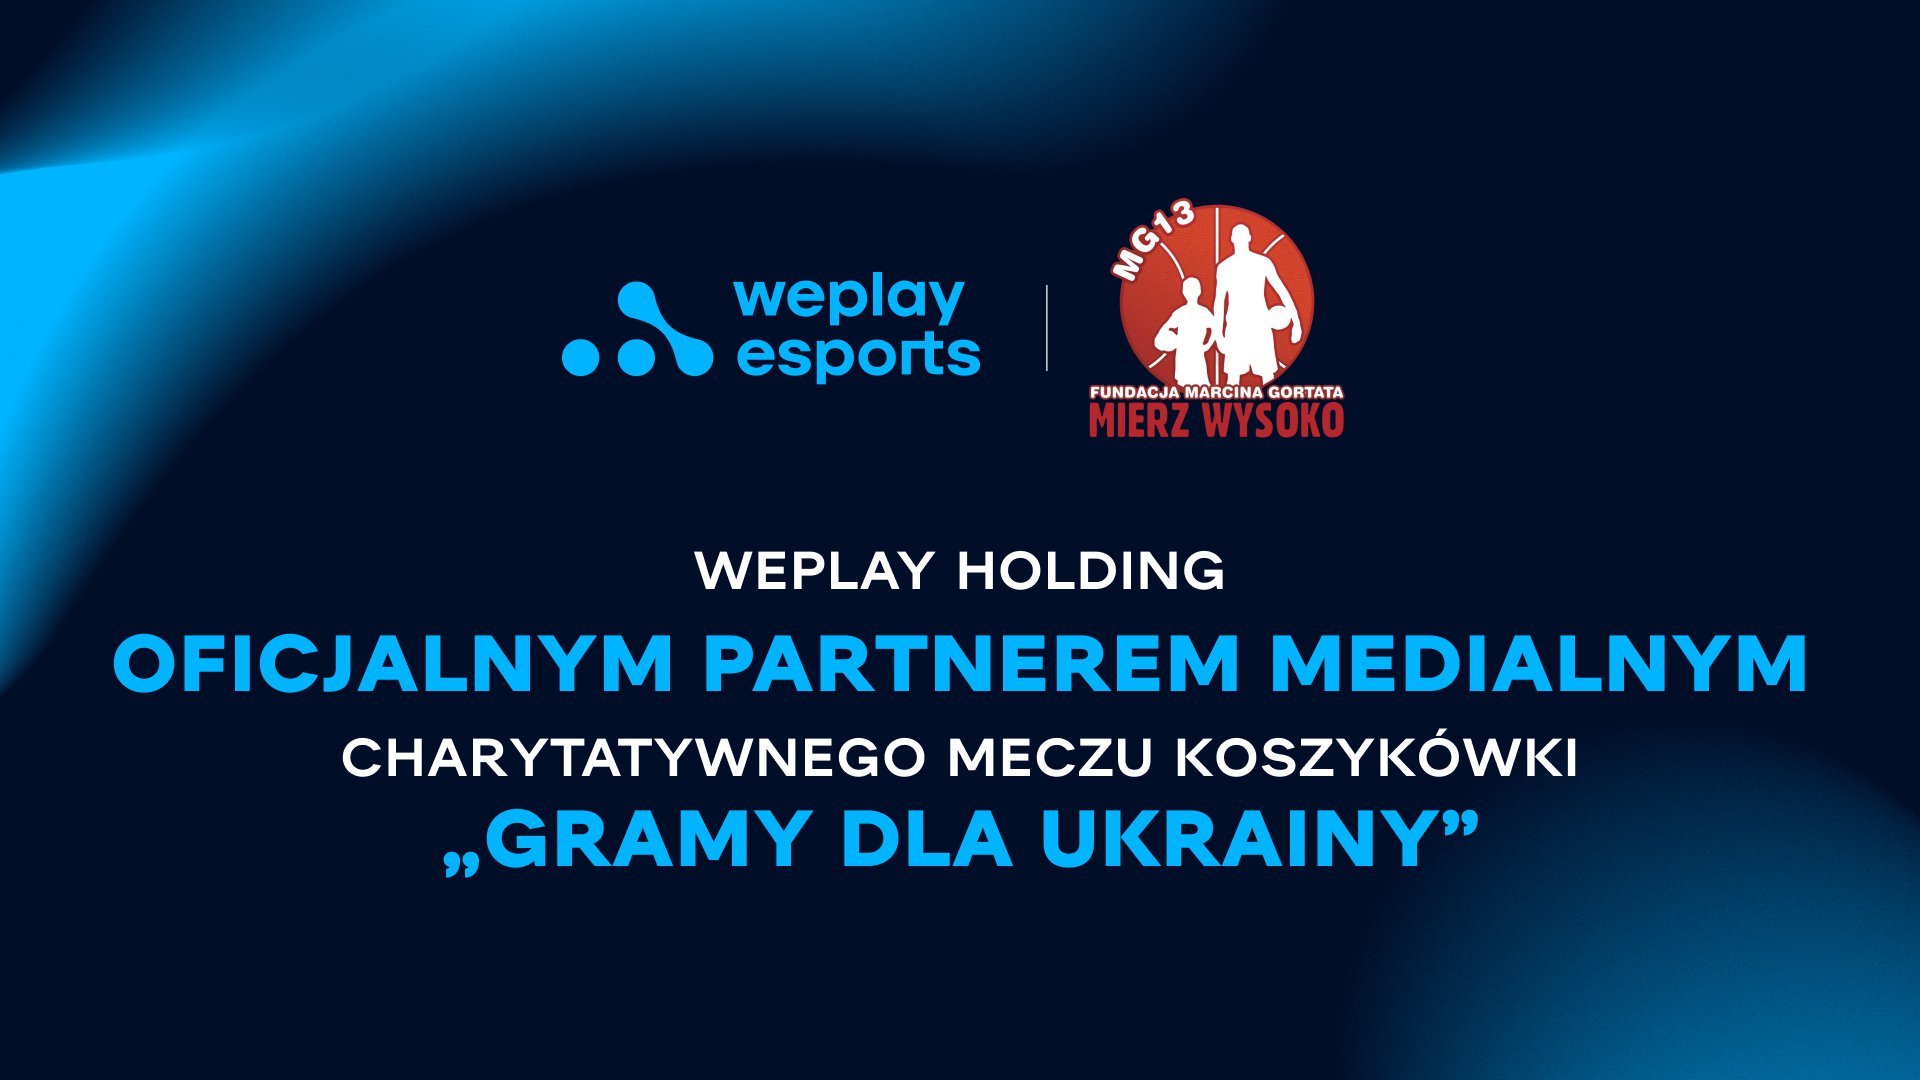 WePlay Holding oficjalnym partnerem medialnym charytatywnego meczu „Gramy dla Ukrainy” prowadzonego przez Marcina Gortata. Zdjęcie: WePlay Holding